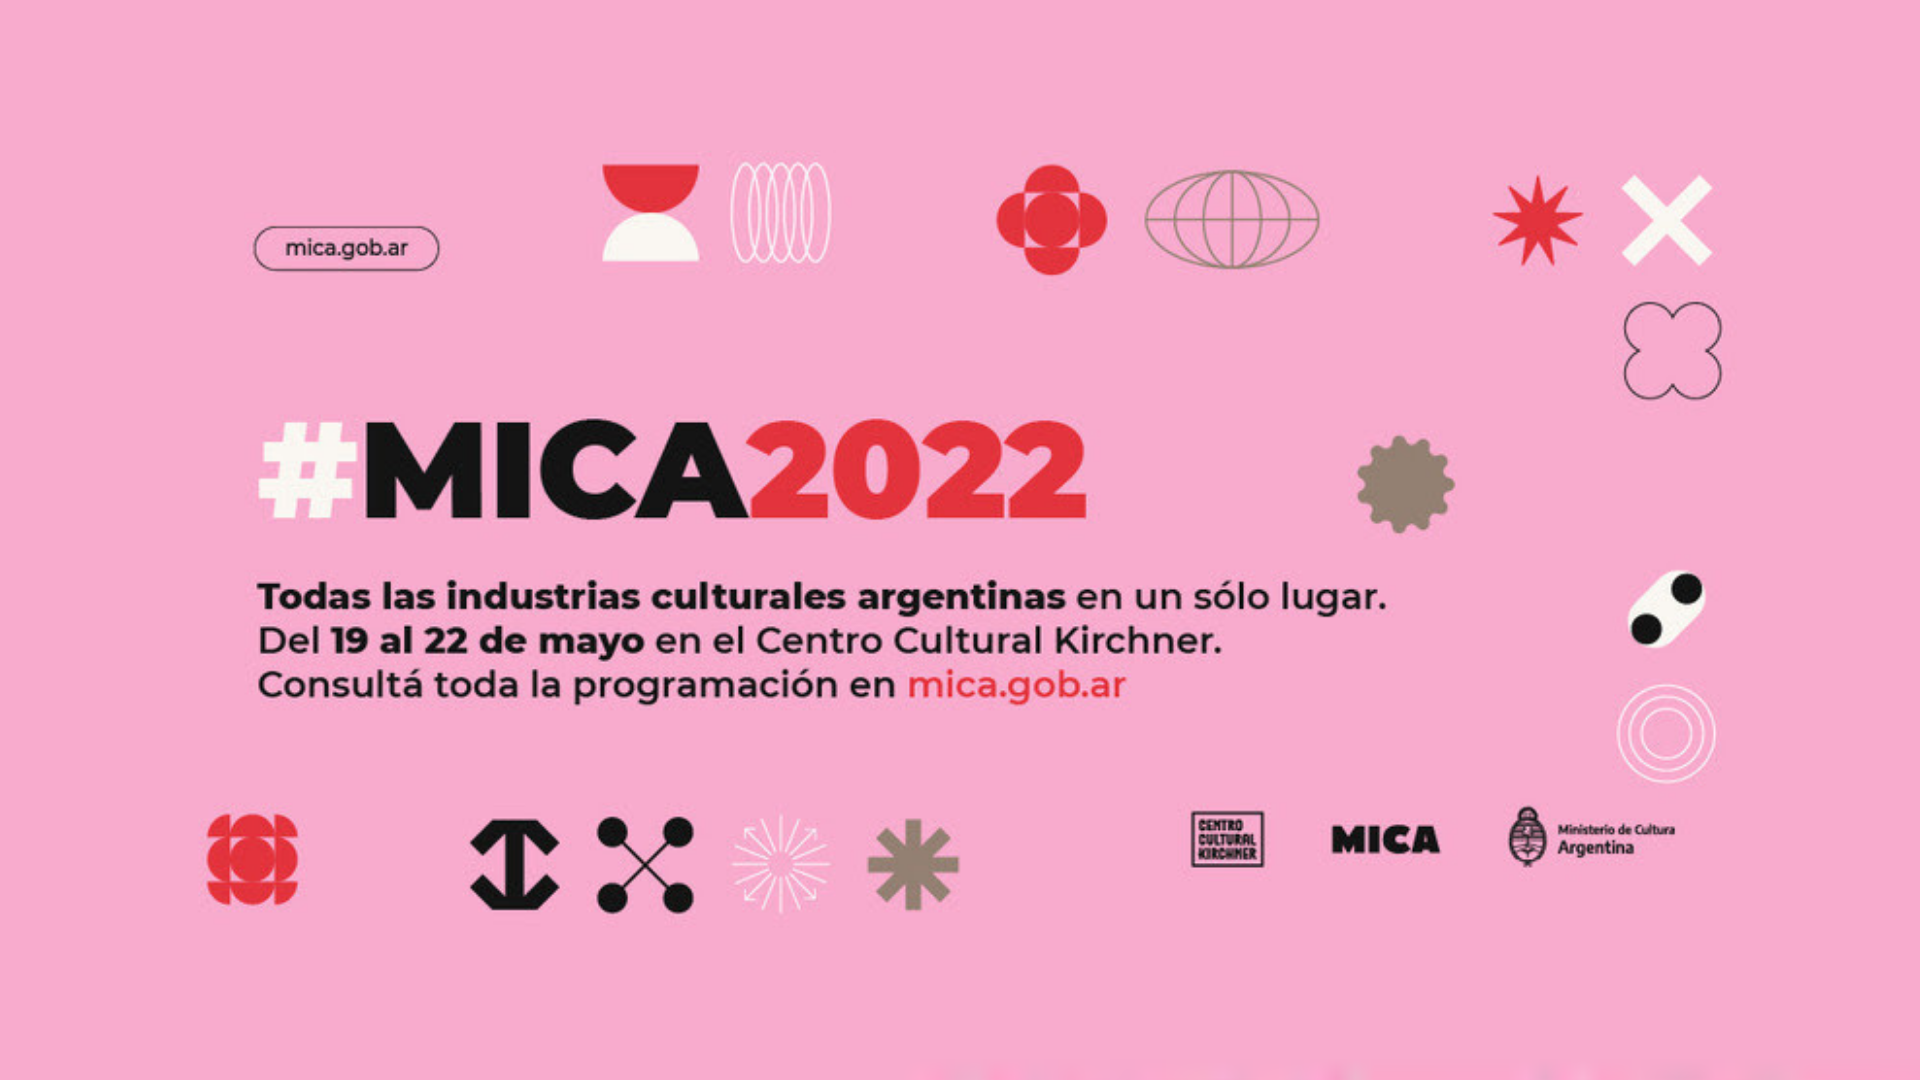 Mañana empieza el MICA 2022: más de 10 mil rondas de negocios para las industrias culturales